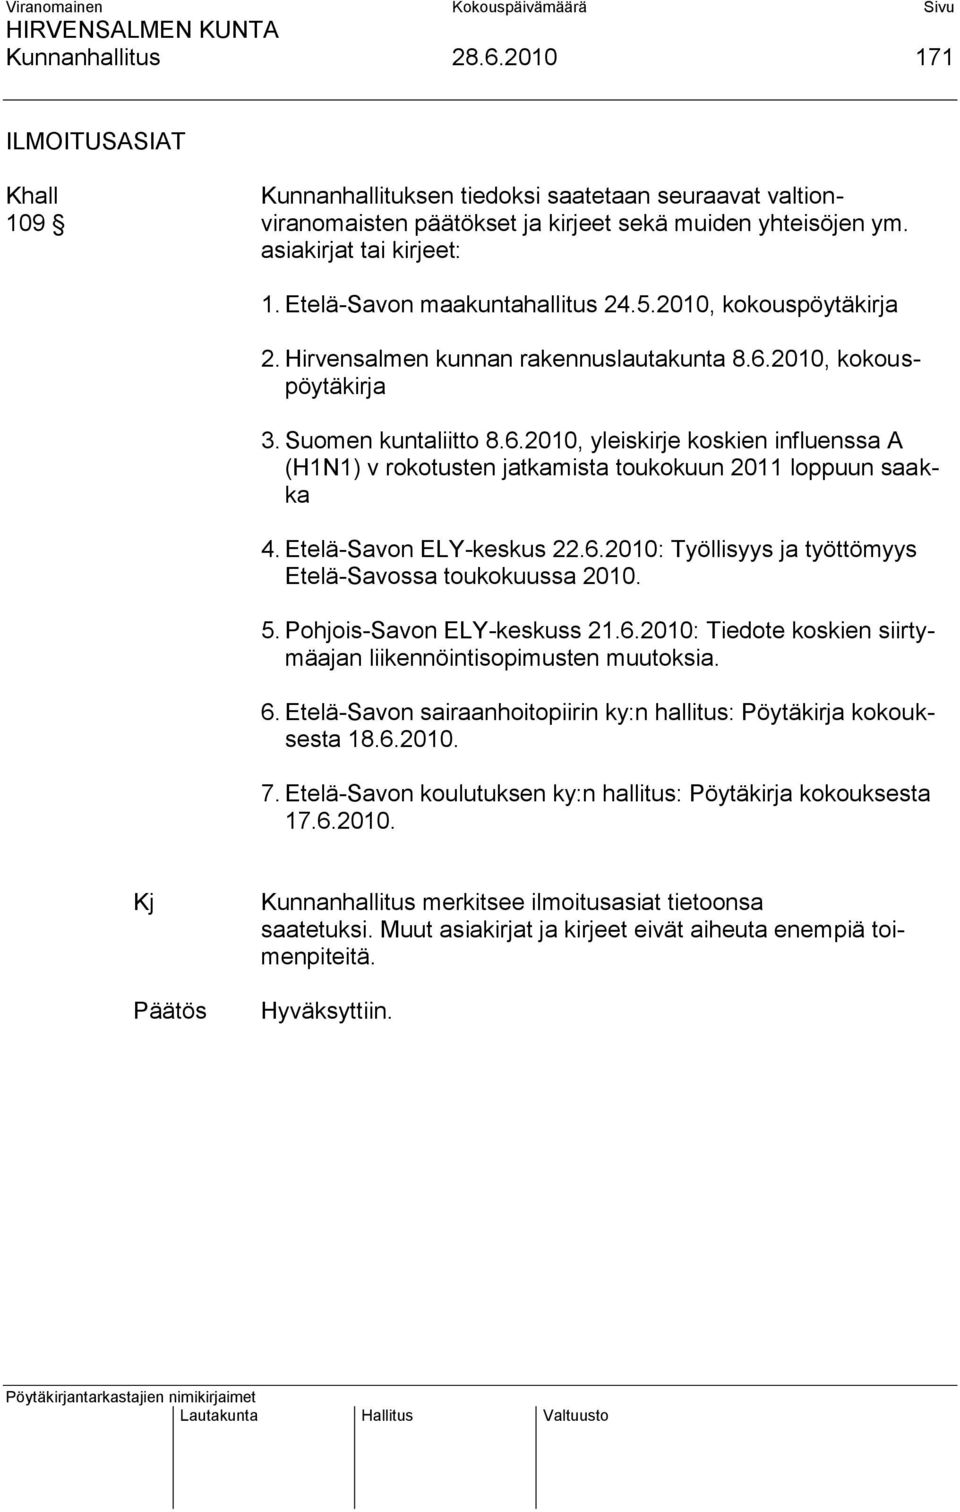 2010, kokouspöytäkirja 3. Suomen kuntaliitto 8.6.2010, yleiskirje koskien influenssa A (H1N1) v rokotusten jatkamista toukokuun 2011 loppuun saakka 4. Etelä-Savon ELY-keskus 22.6.2010: Työllisyys ja työttömyys Etelä-Savossa toukokuussa 2010.